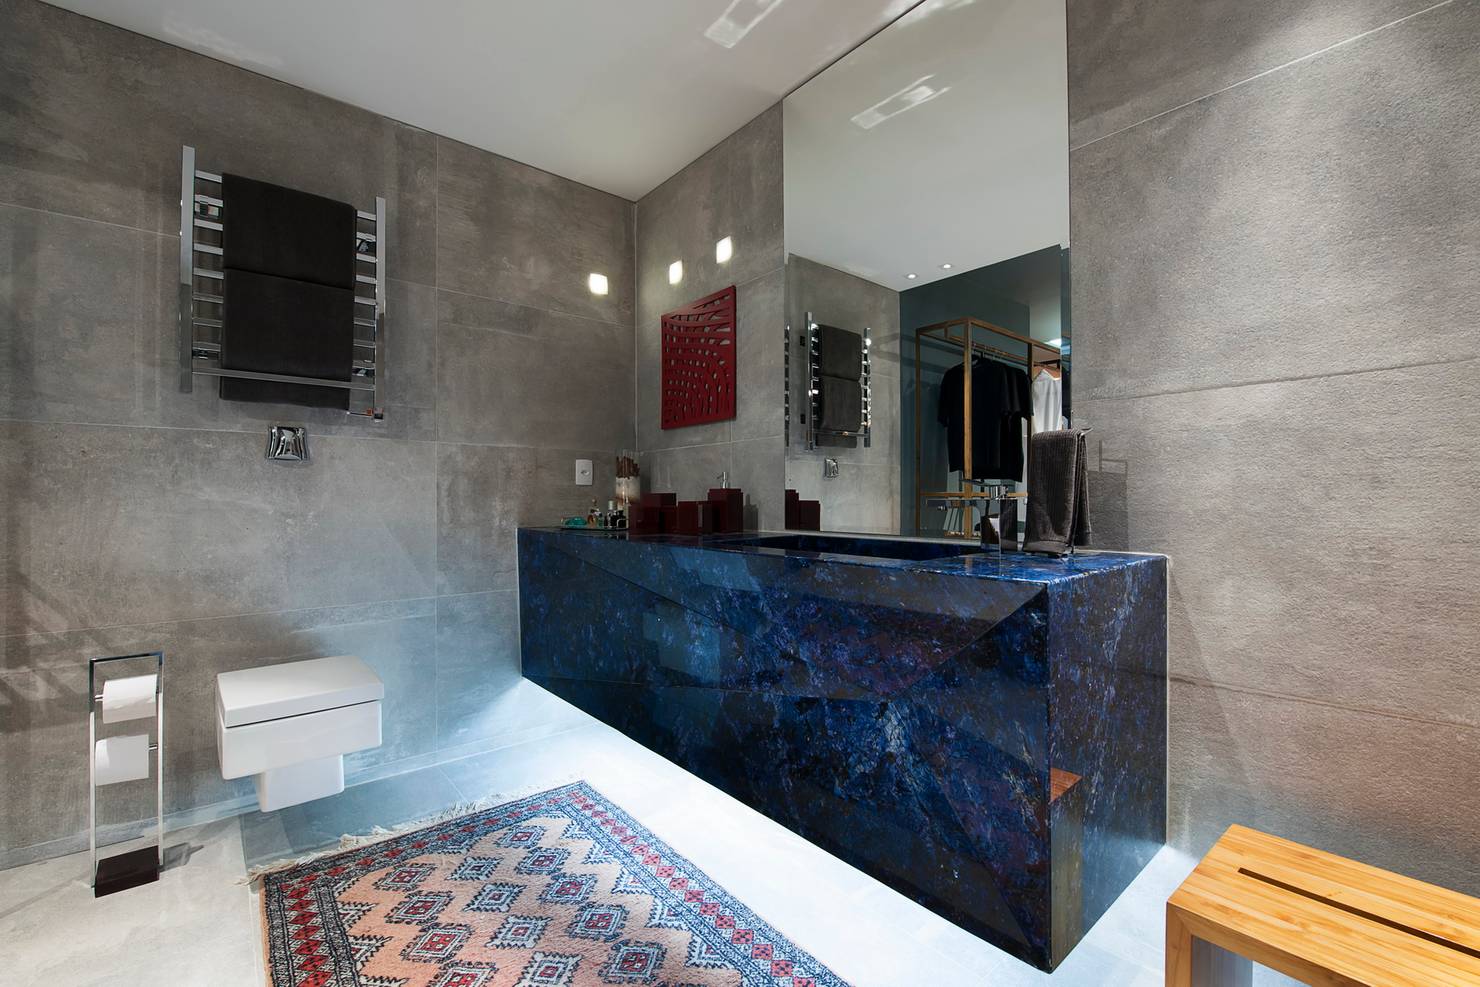 Трендовые идеи для дизайна ванной комнаты: 10 фото- фотографии
				